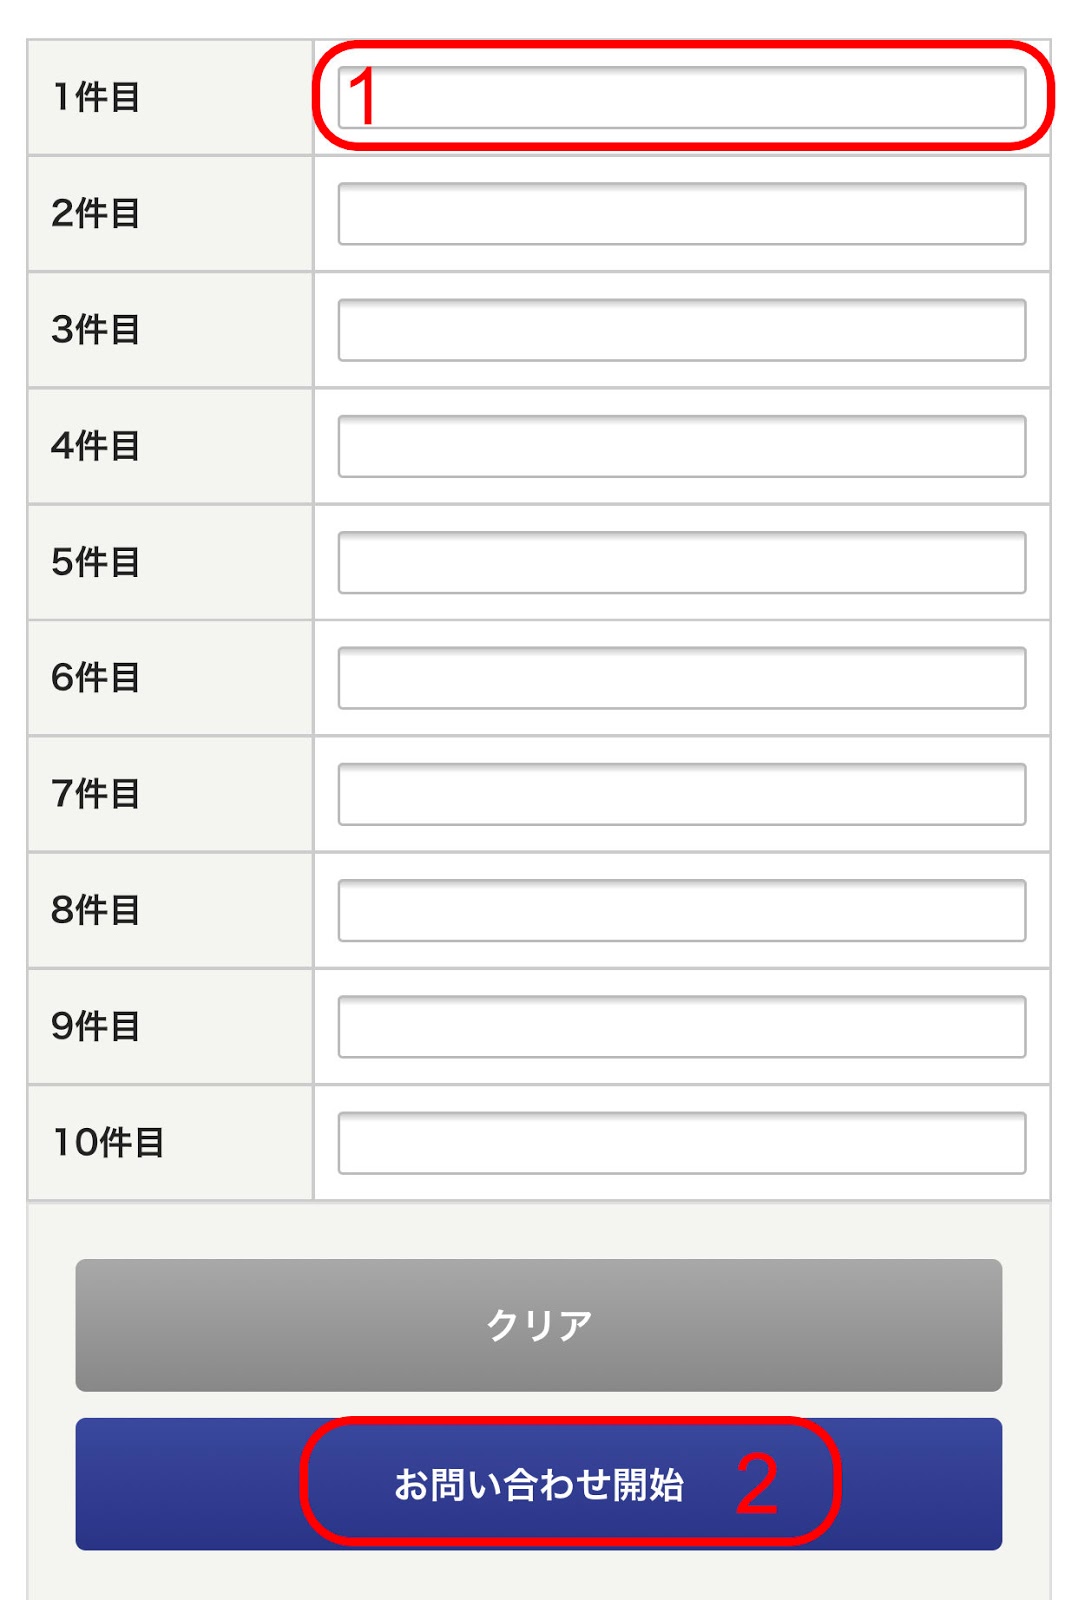 Cách kiểm tra bưu phẩm gửi đi ở Nhật Bản diiho.com